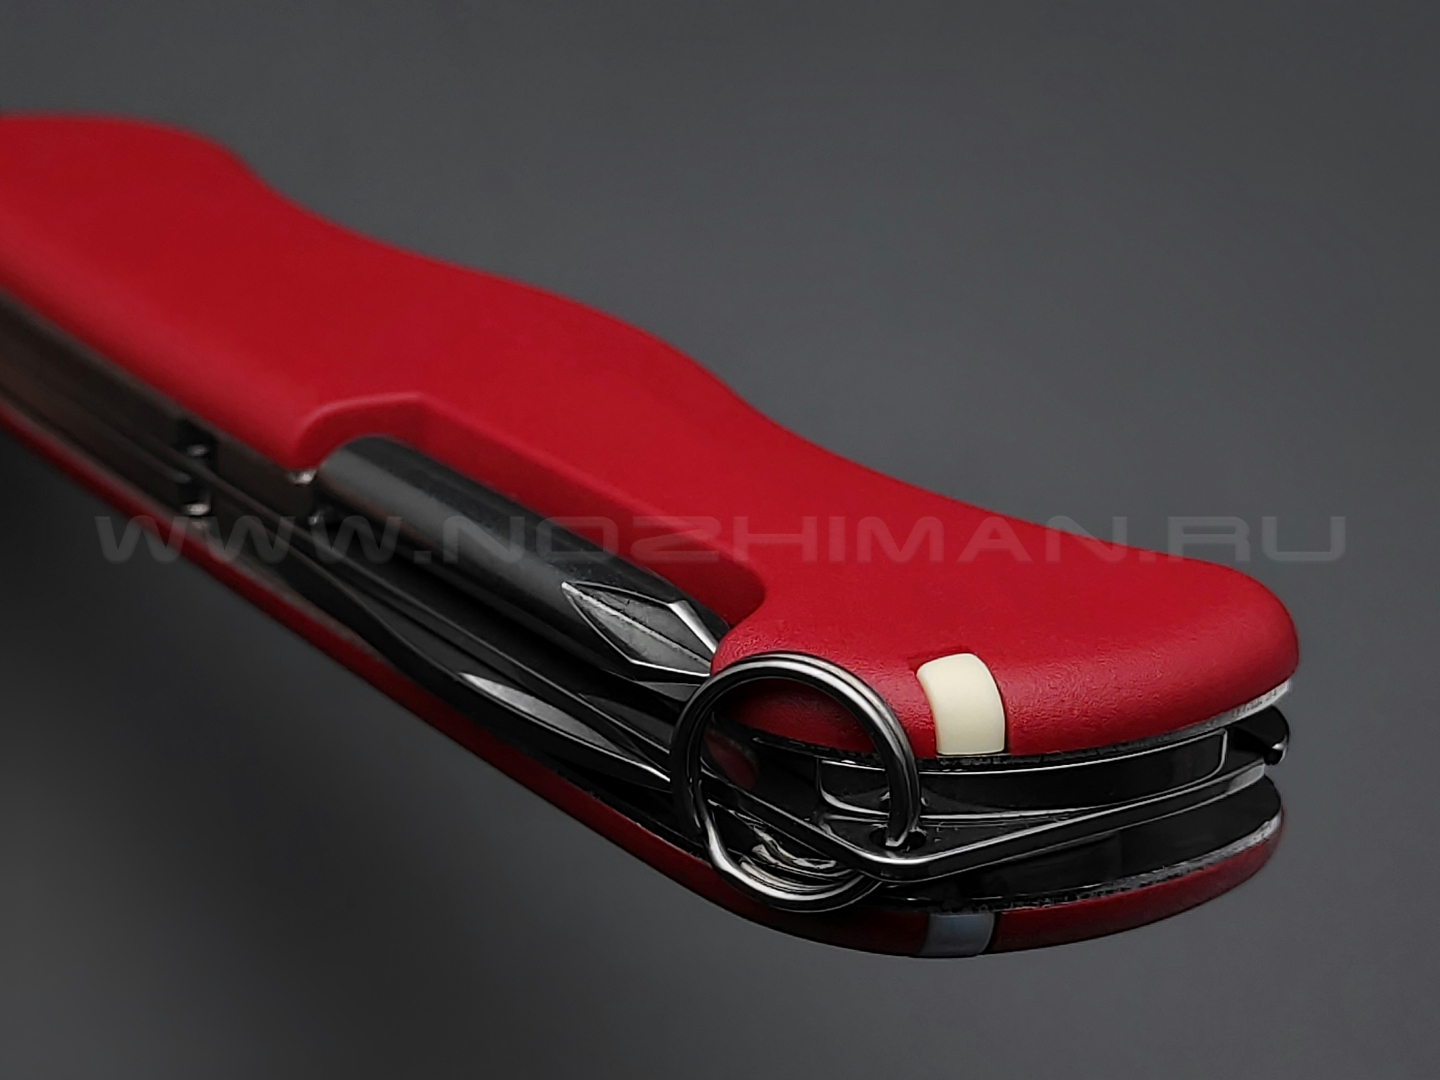 Швейцарский нож Victorinox 0.8453 Adventurer red (11 функций)